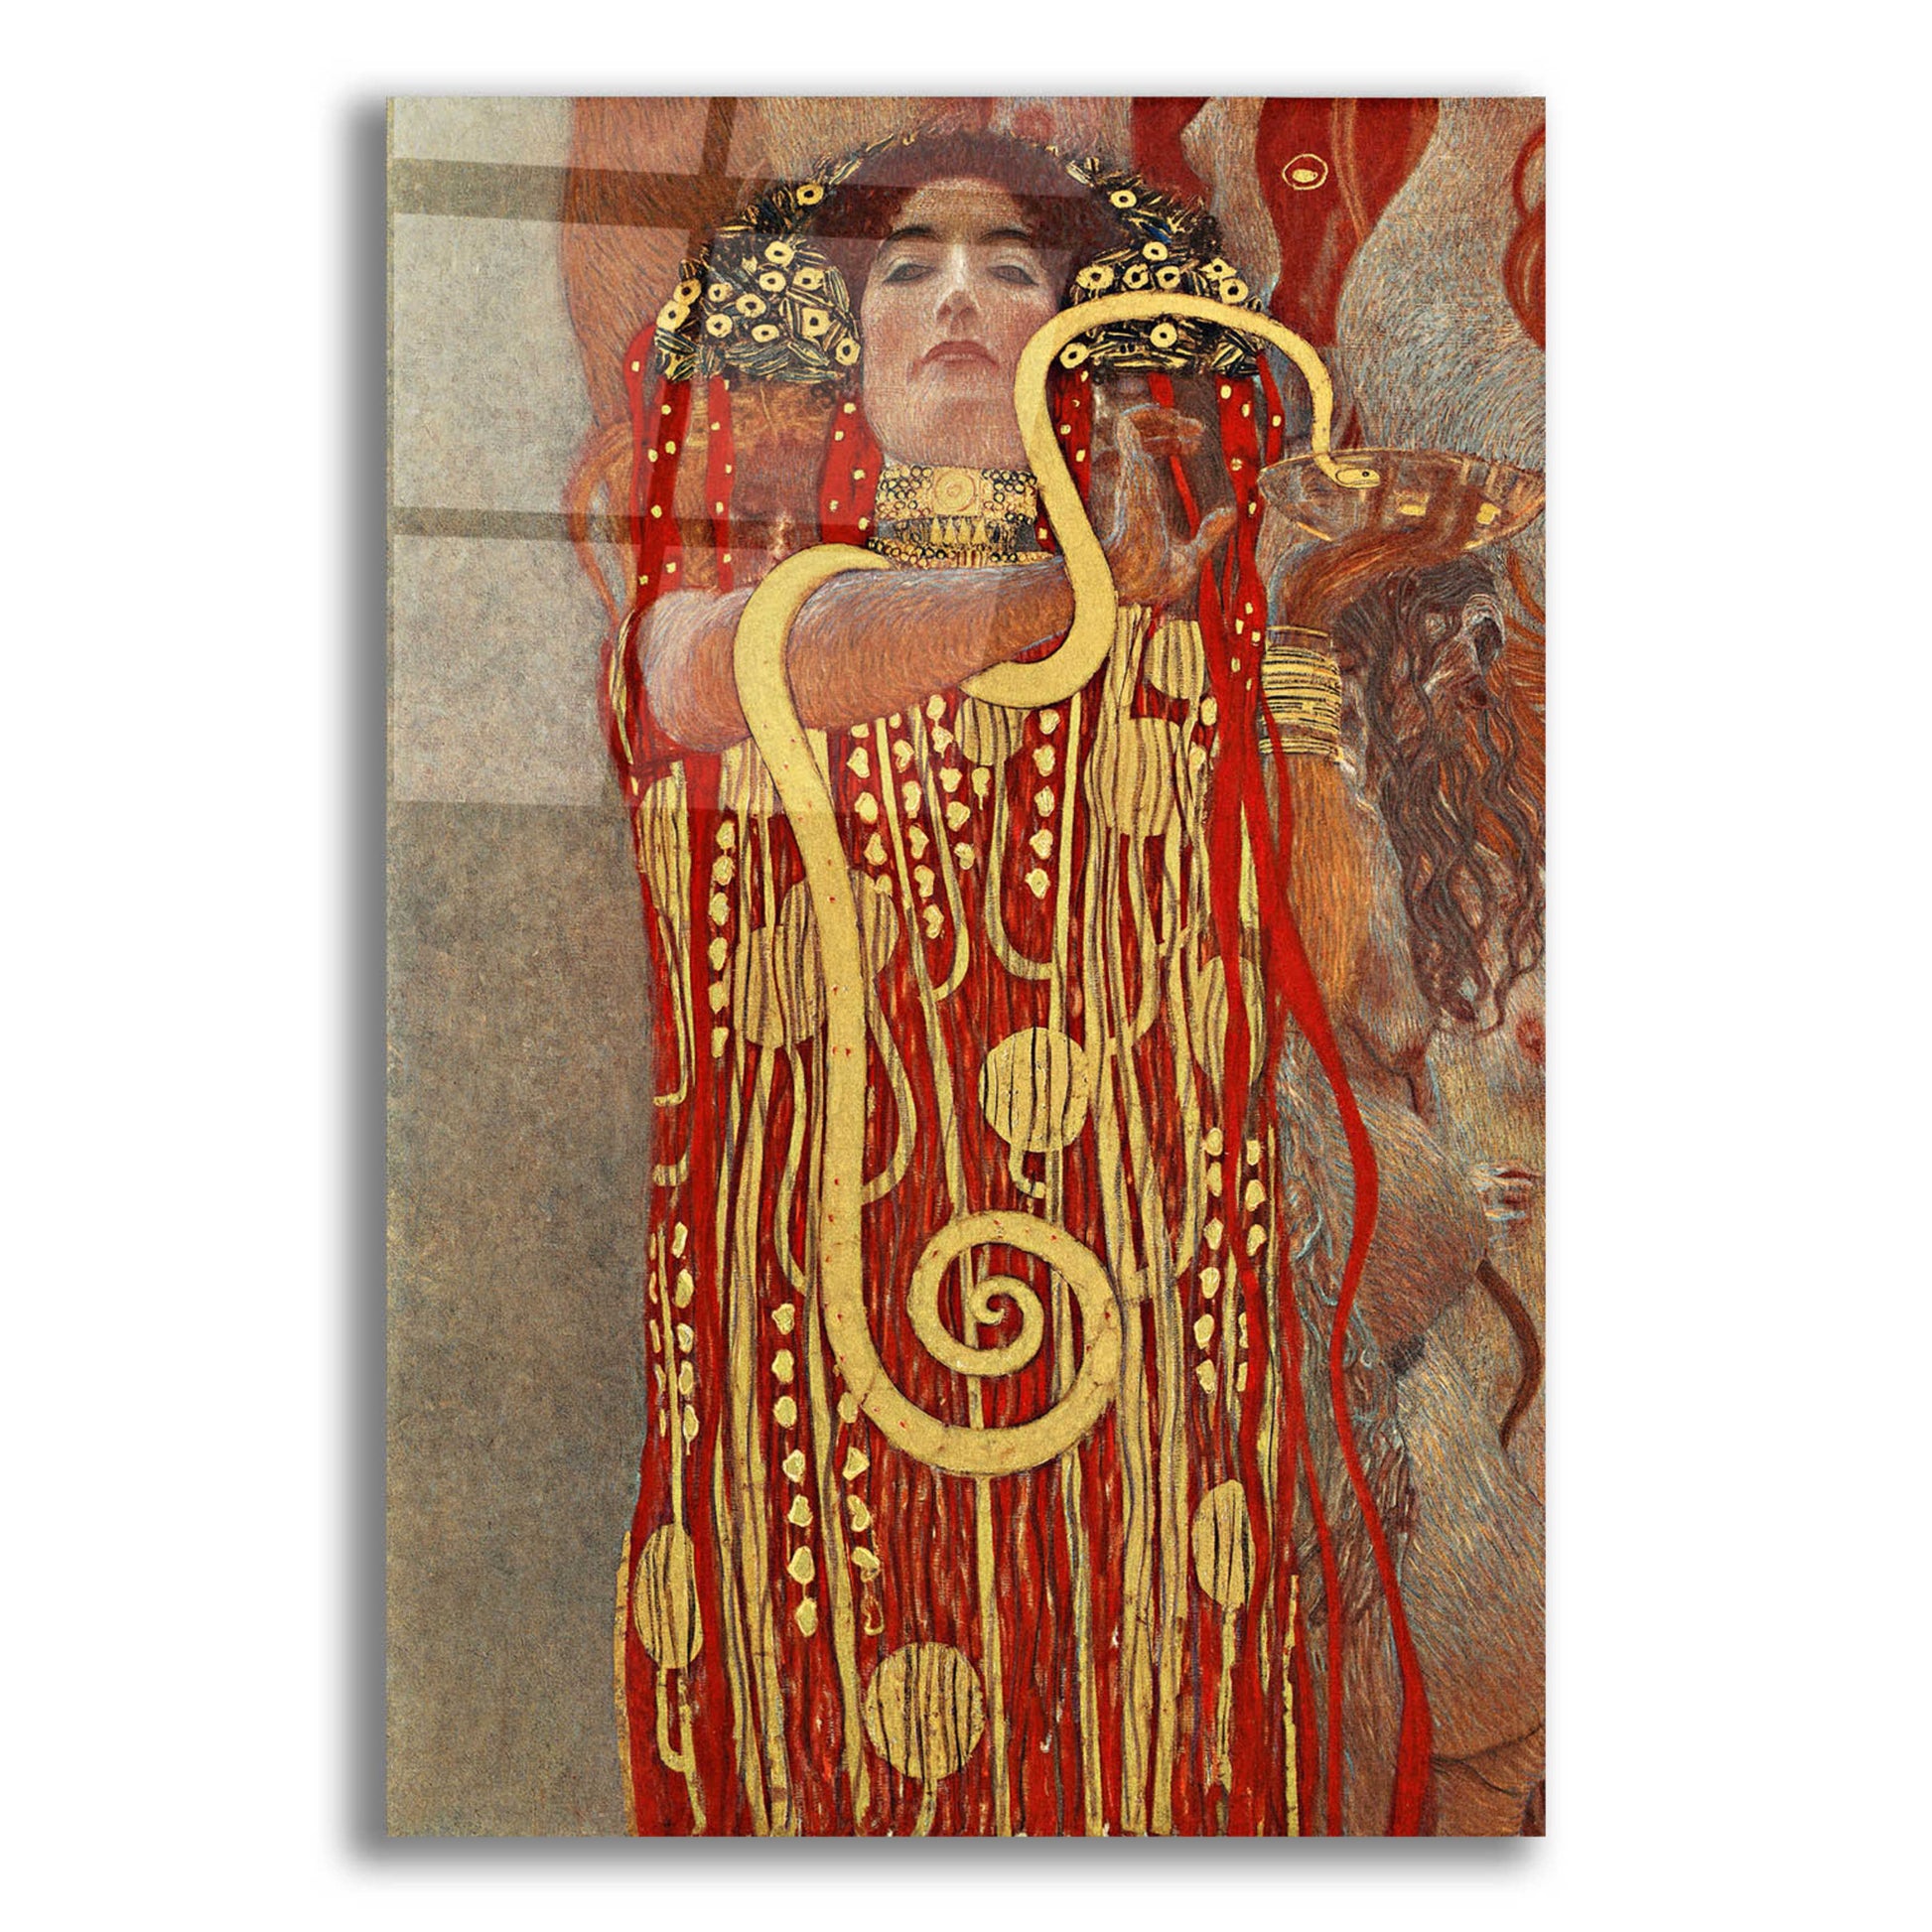 Epic Art 'Hygieia' by Gustav Klimt, Acrylic Glass Wall Art,12x16